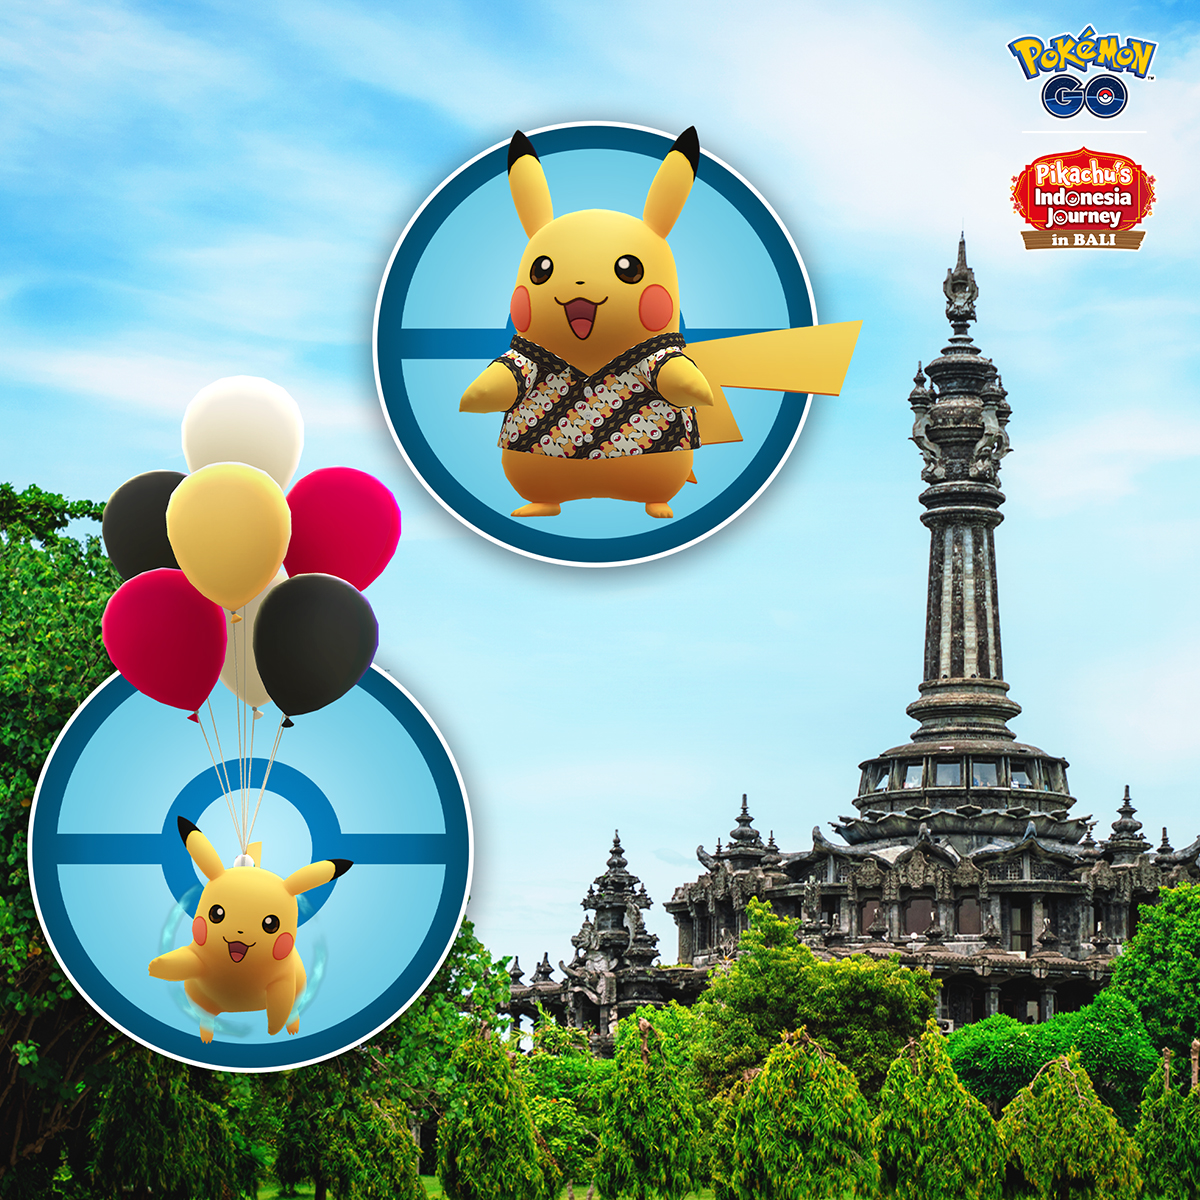 Pikachu's Indonesia Journey: Bali – Pokémon GO